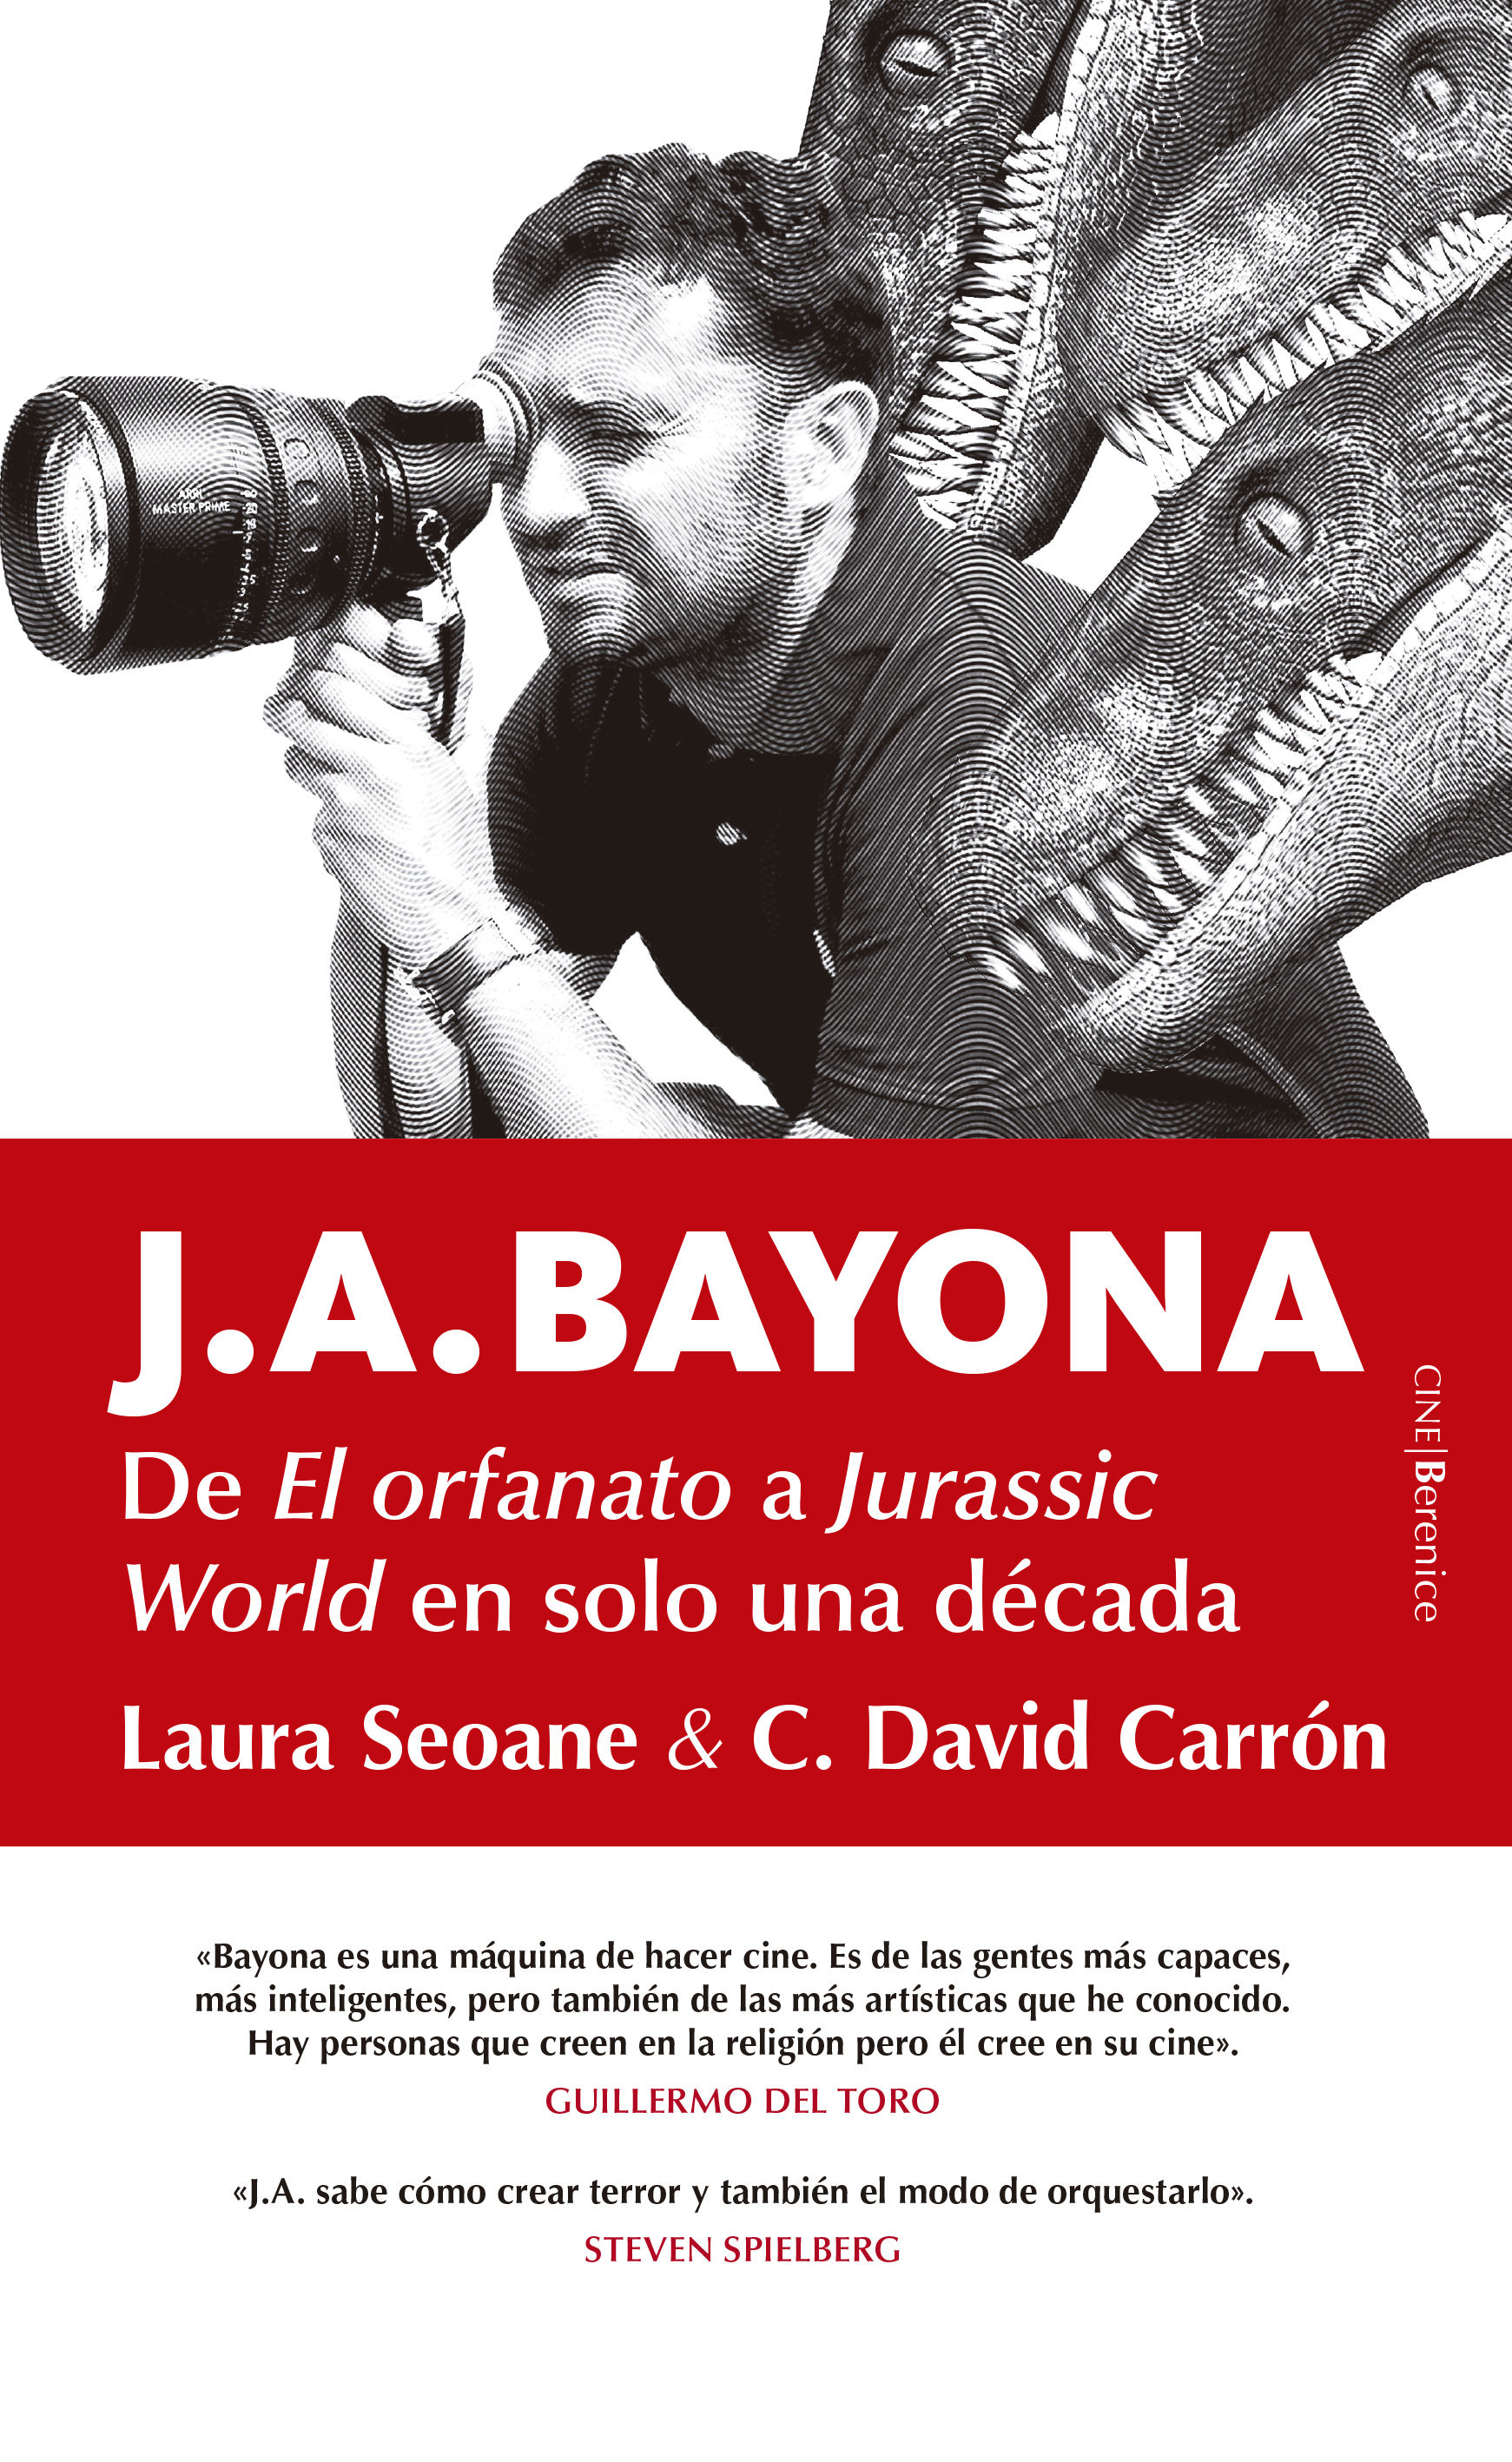 J.A. BAYONA. DE EL ORFANATO A JURASSIC WORLD EN SOLO UNA DÉCADA